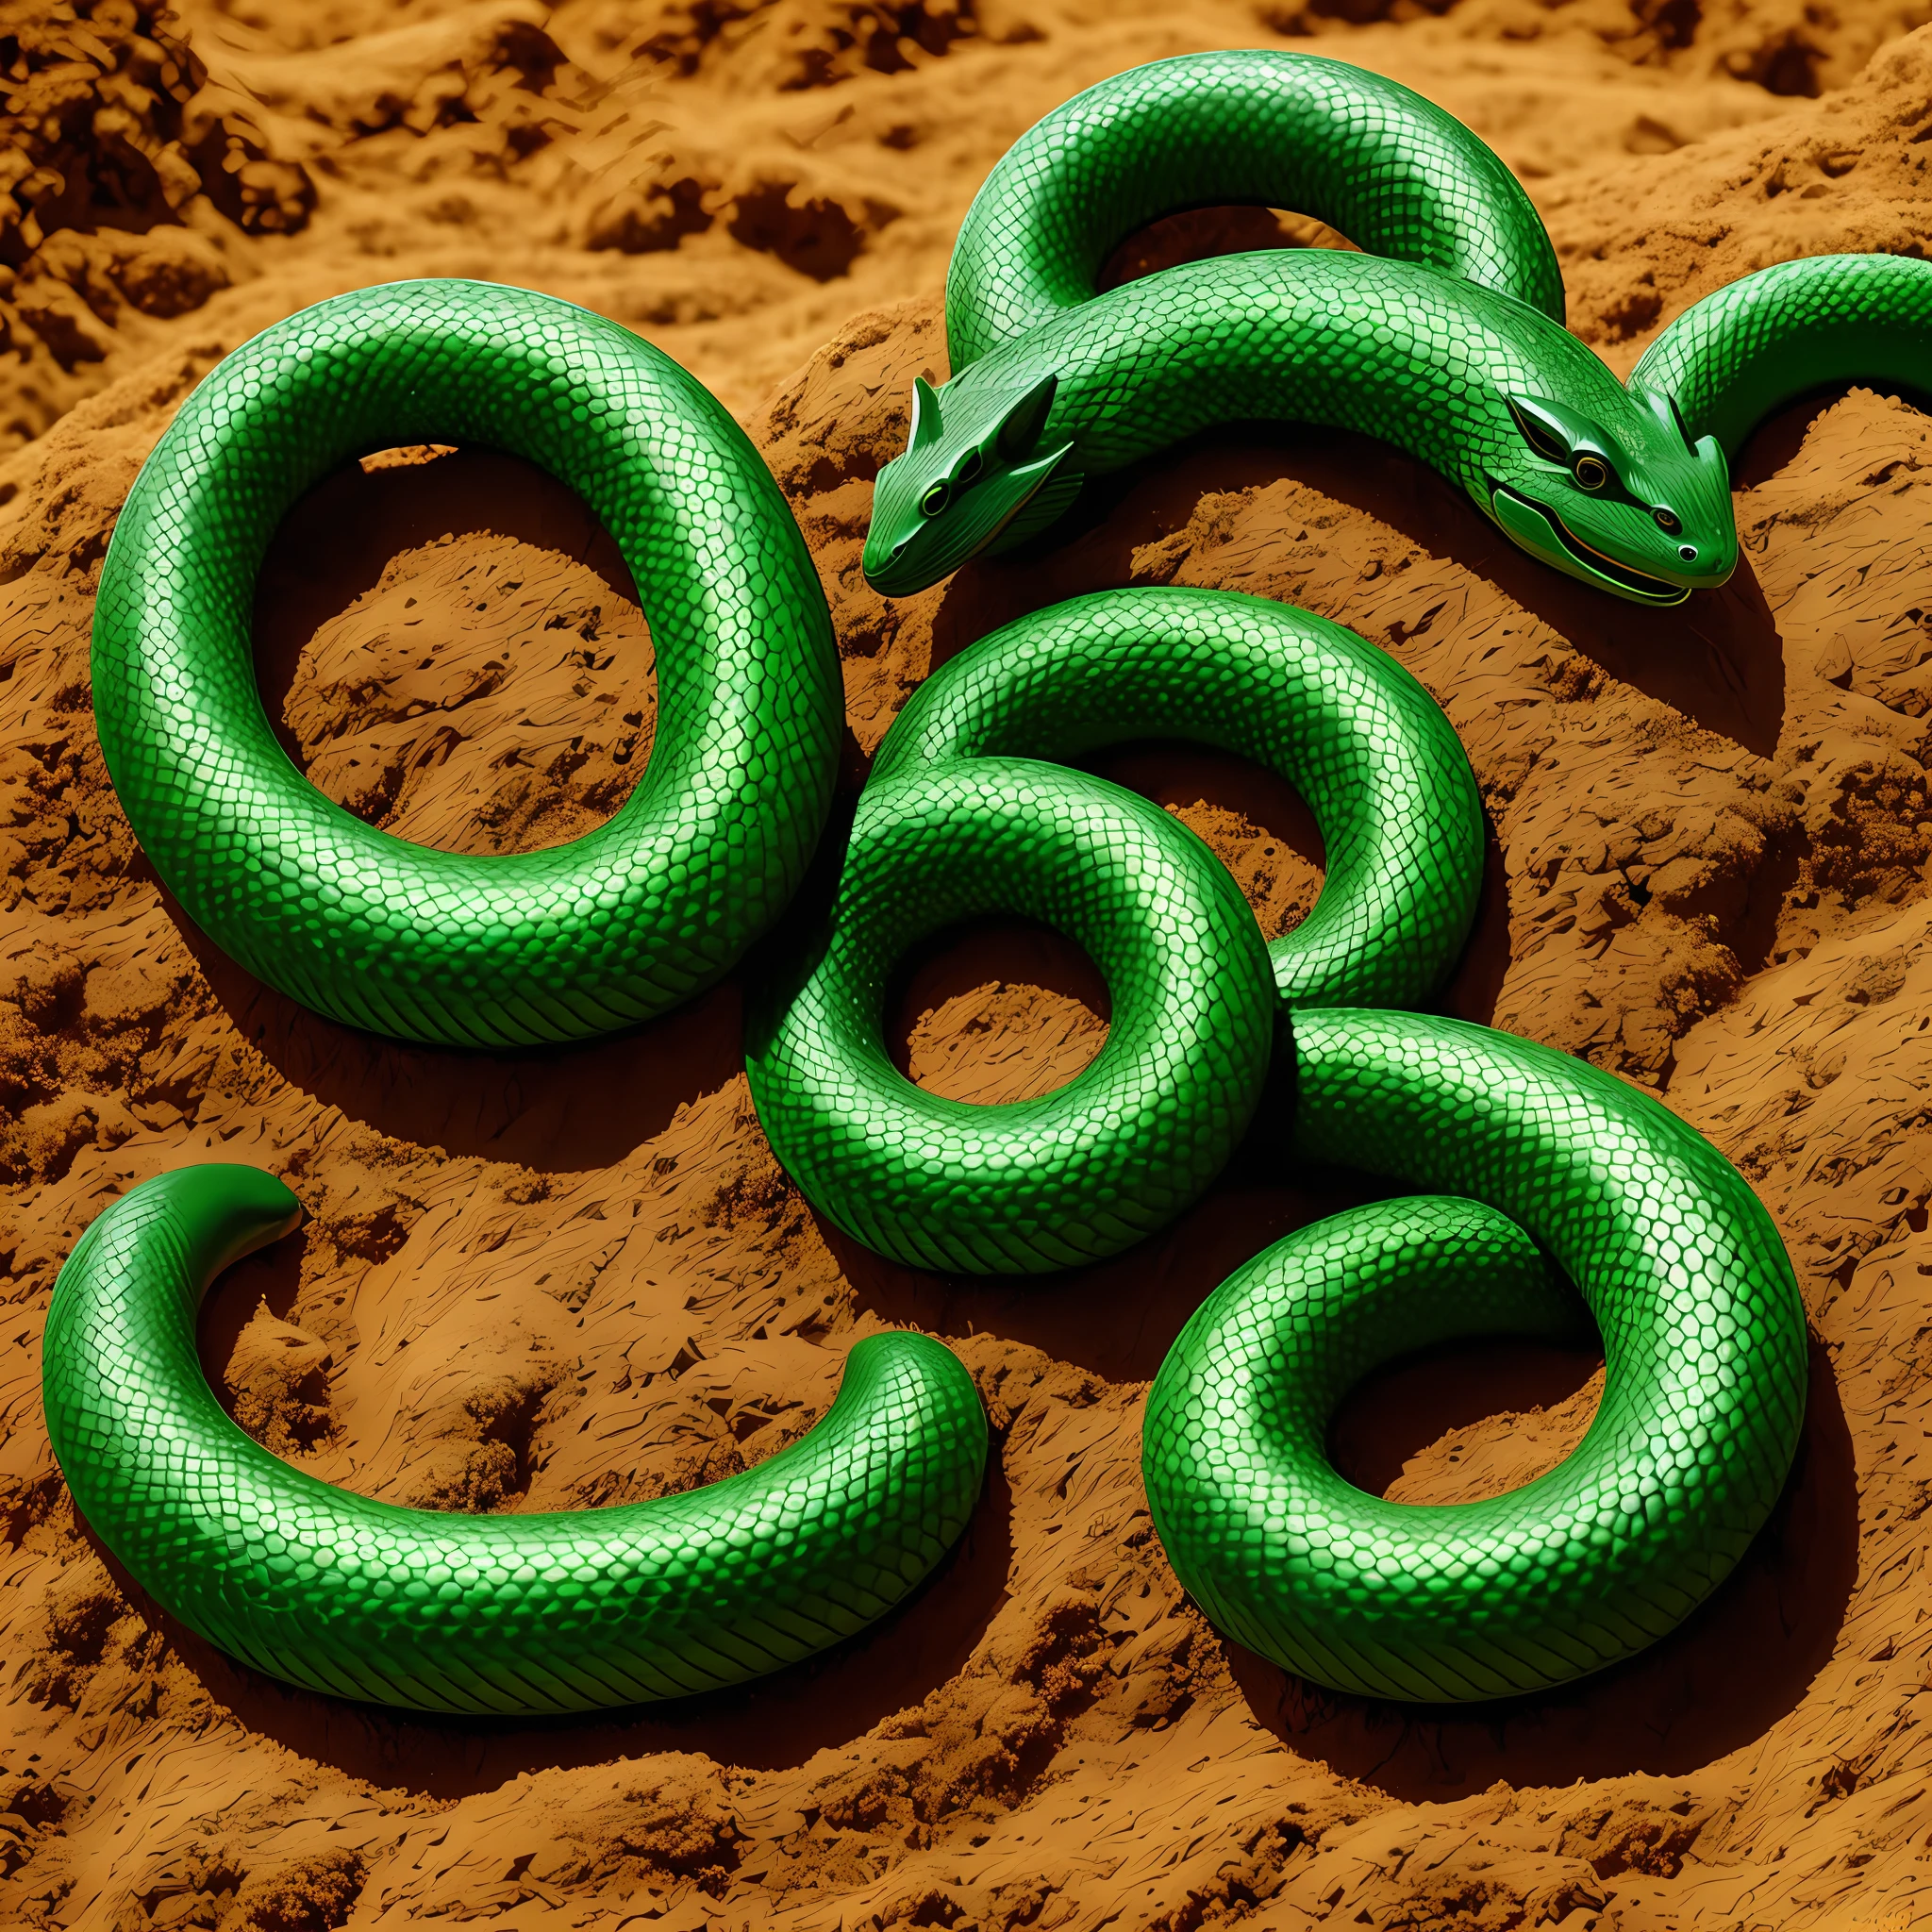 serpiente verde en hormiguero fantasía realista